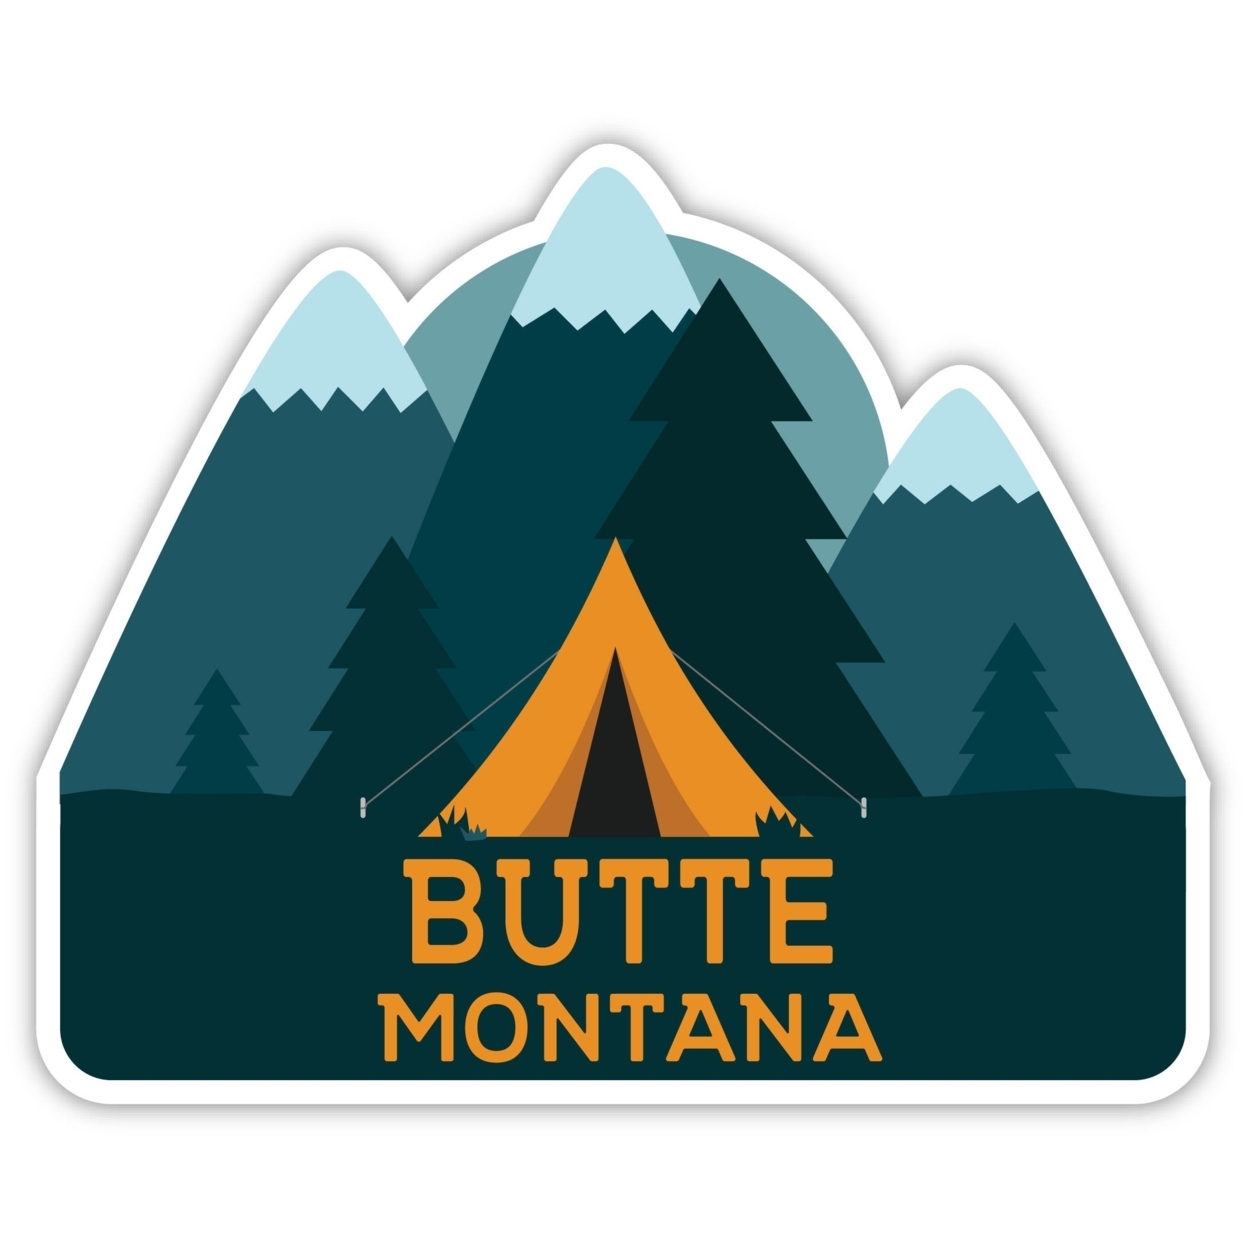 Butte Montana Souvenir Decorative Stickers (Choose Theme And Size) - Single Unit, 12-Inch, Tent